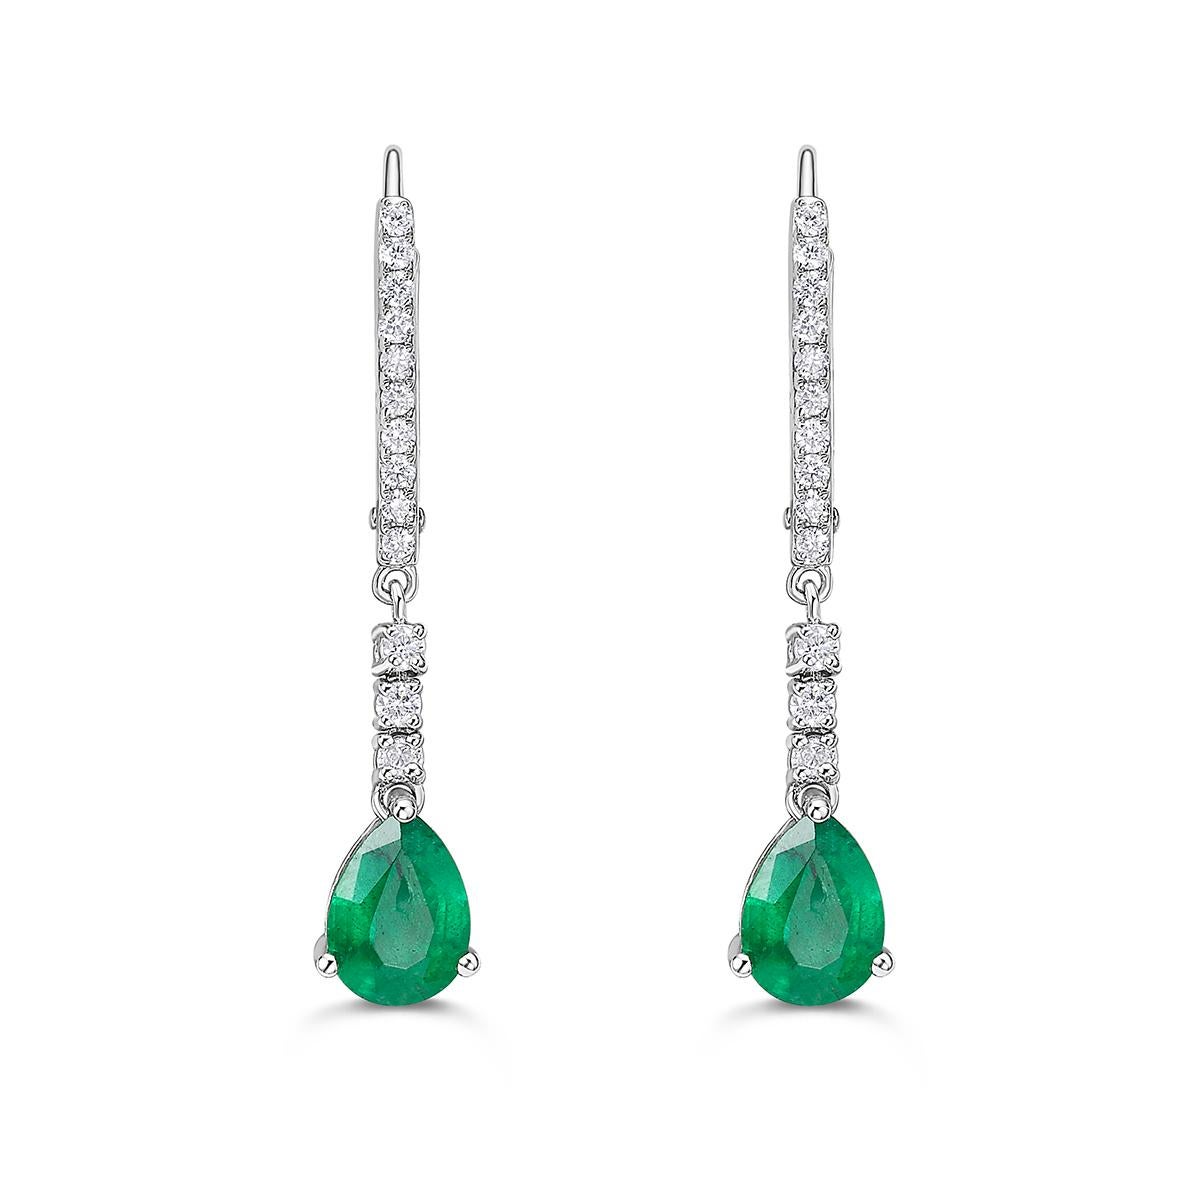 Bringen Sie Farbe in Ihre Alltagsgarderobe mit diesen Smaragd- und Diamant-Ohrringen mit einem wunderschönen Smaragd-Birnen-Mittelstein und runden Diamanten als Akzent. Erhältlich in zwei Mittelsteingrößen, 7x5 und 5x3.

Ohrringe aus 14 Karat